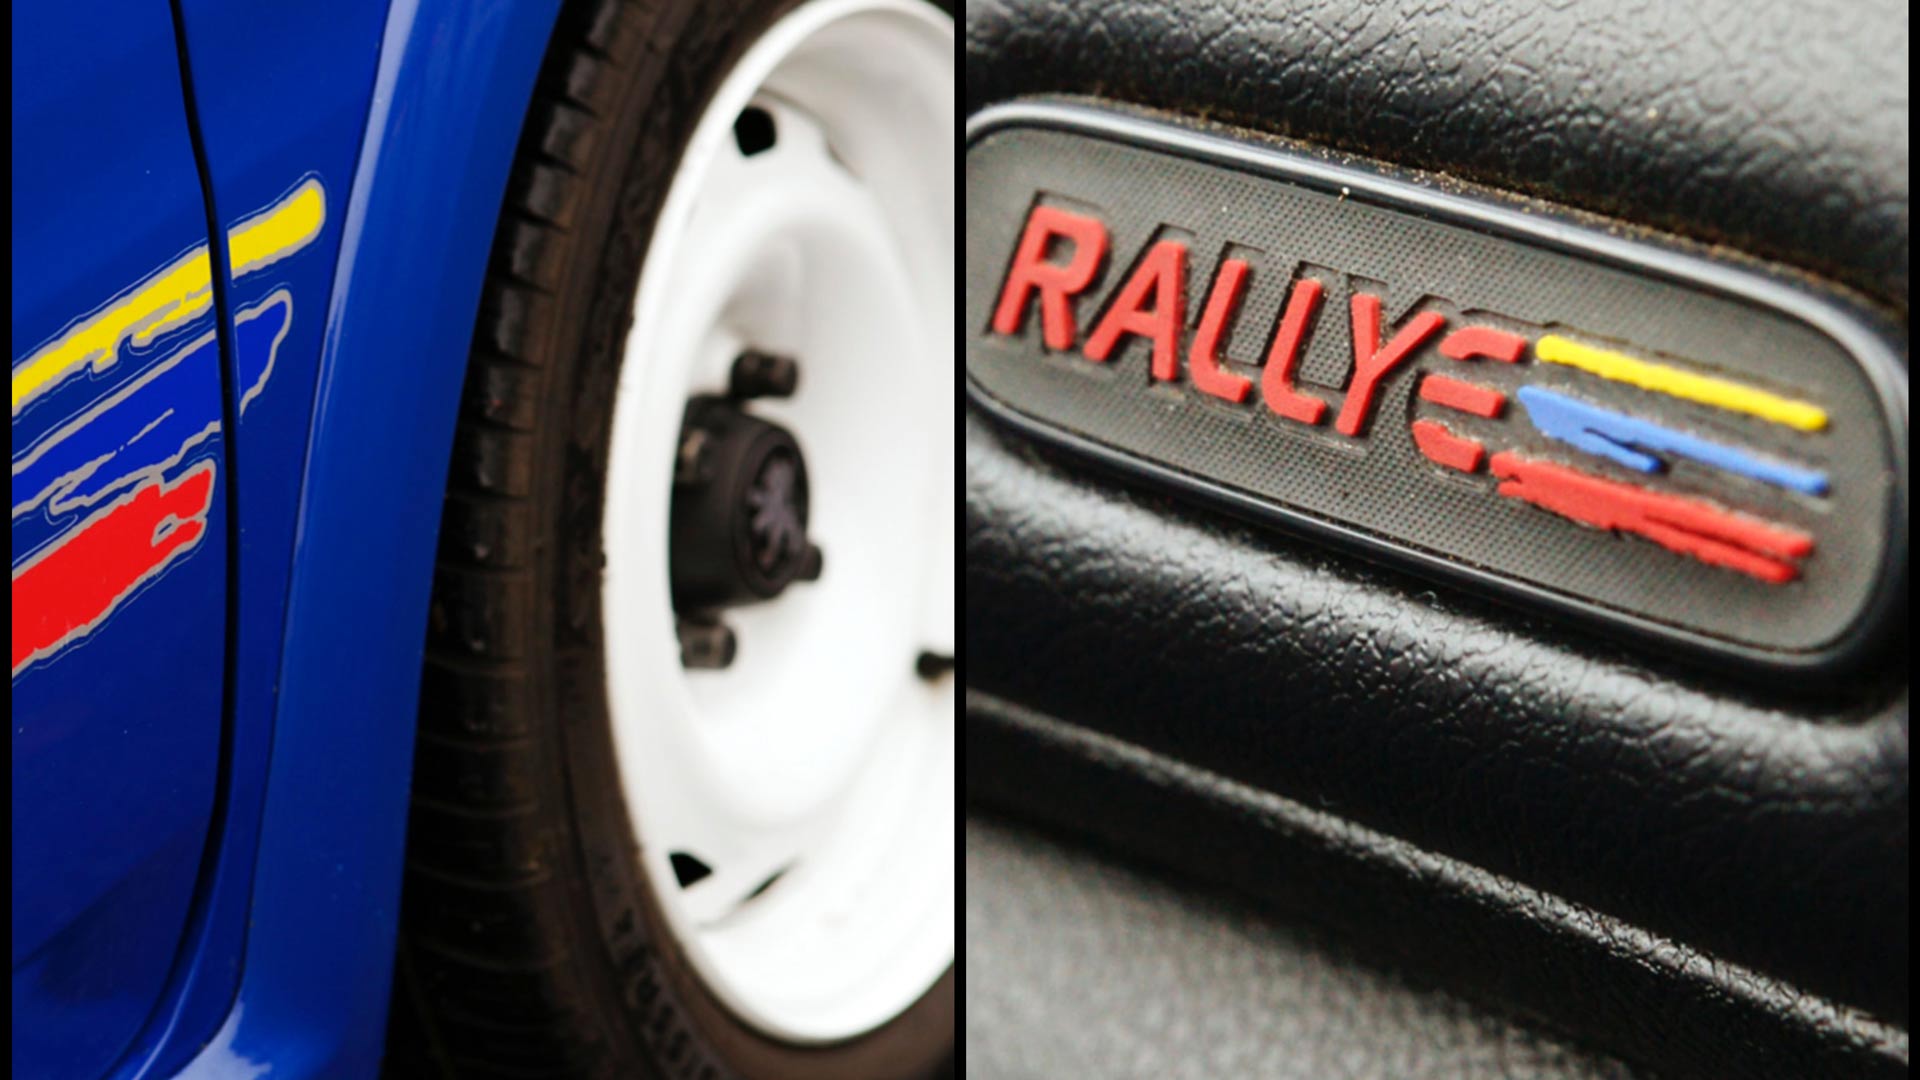 Για τους σιδερένιους, λευκούς τροχούς του Peugeot Rallye. Αντικείμενο πόθου